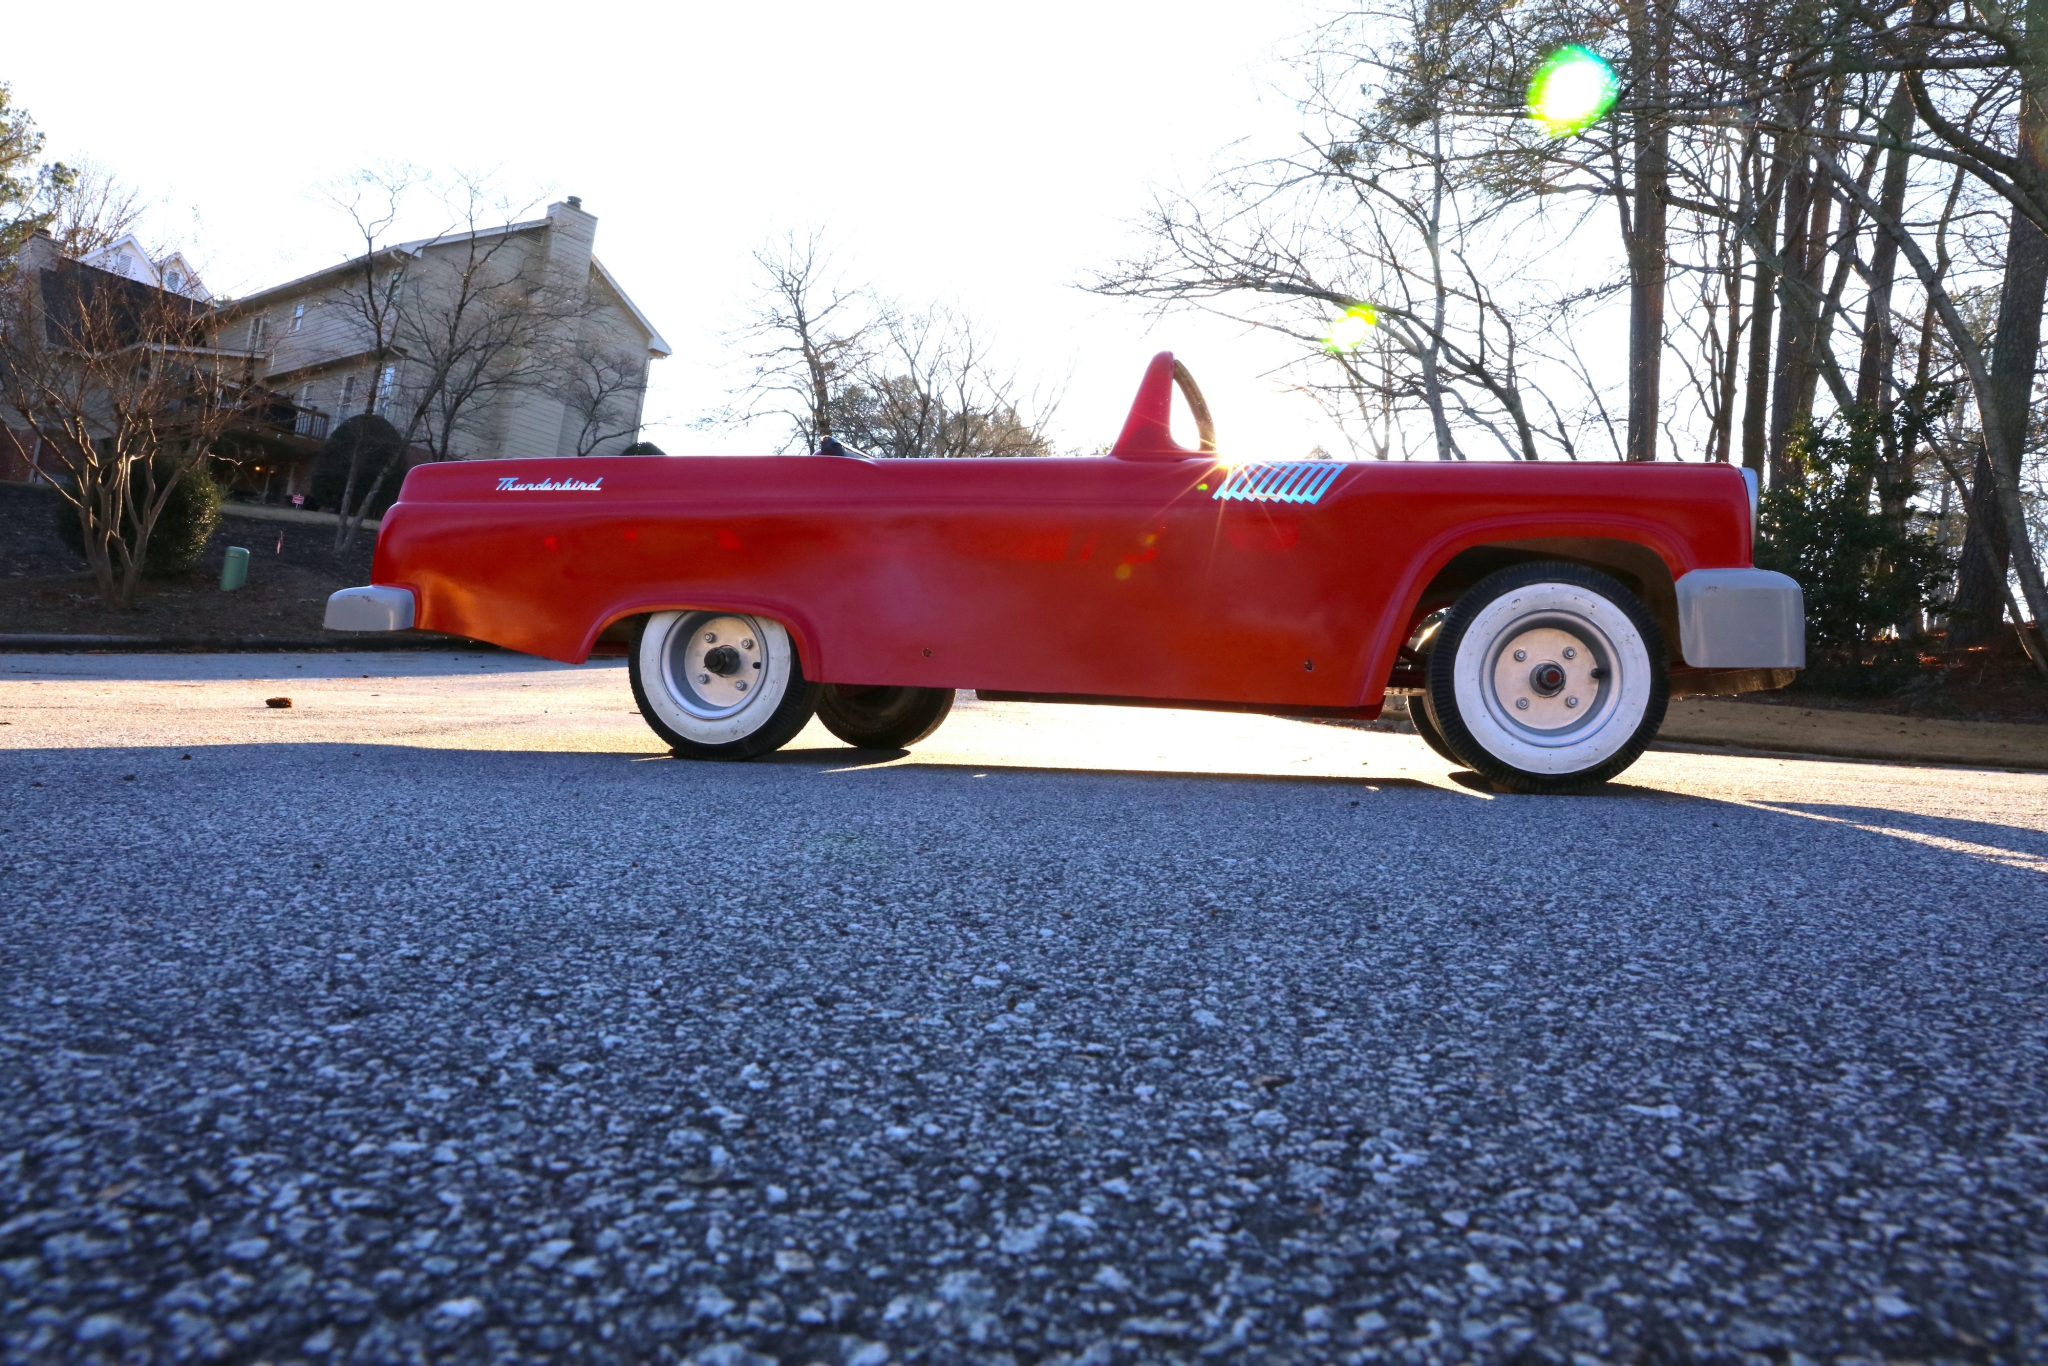 Ford Thunderbird–Style Go Kart